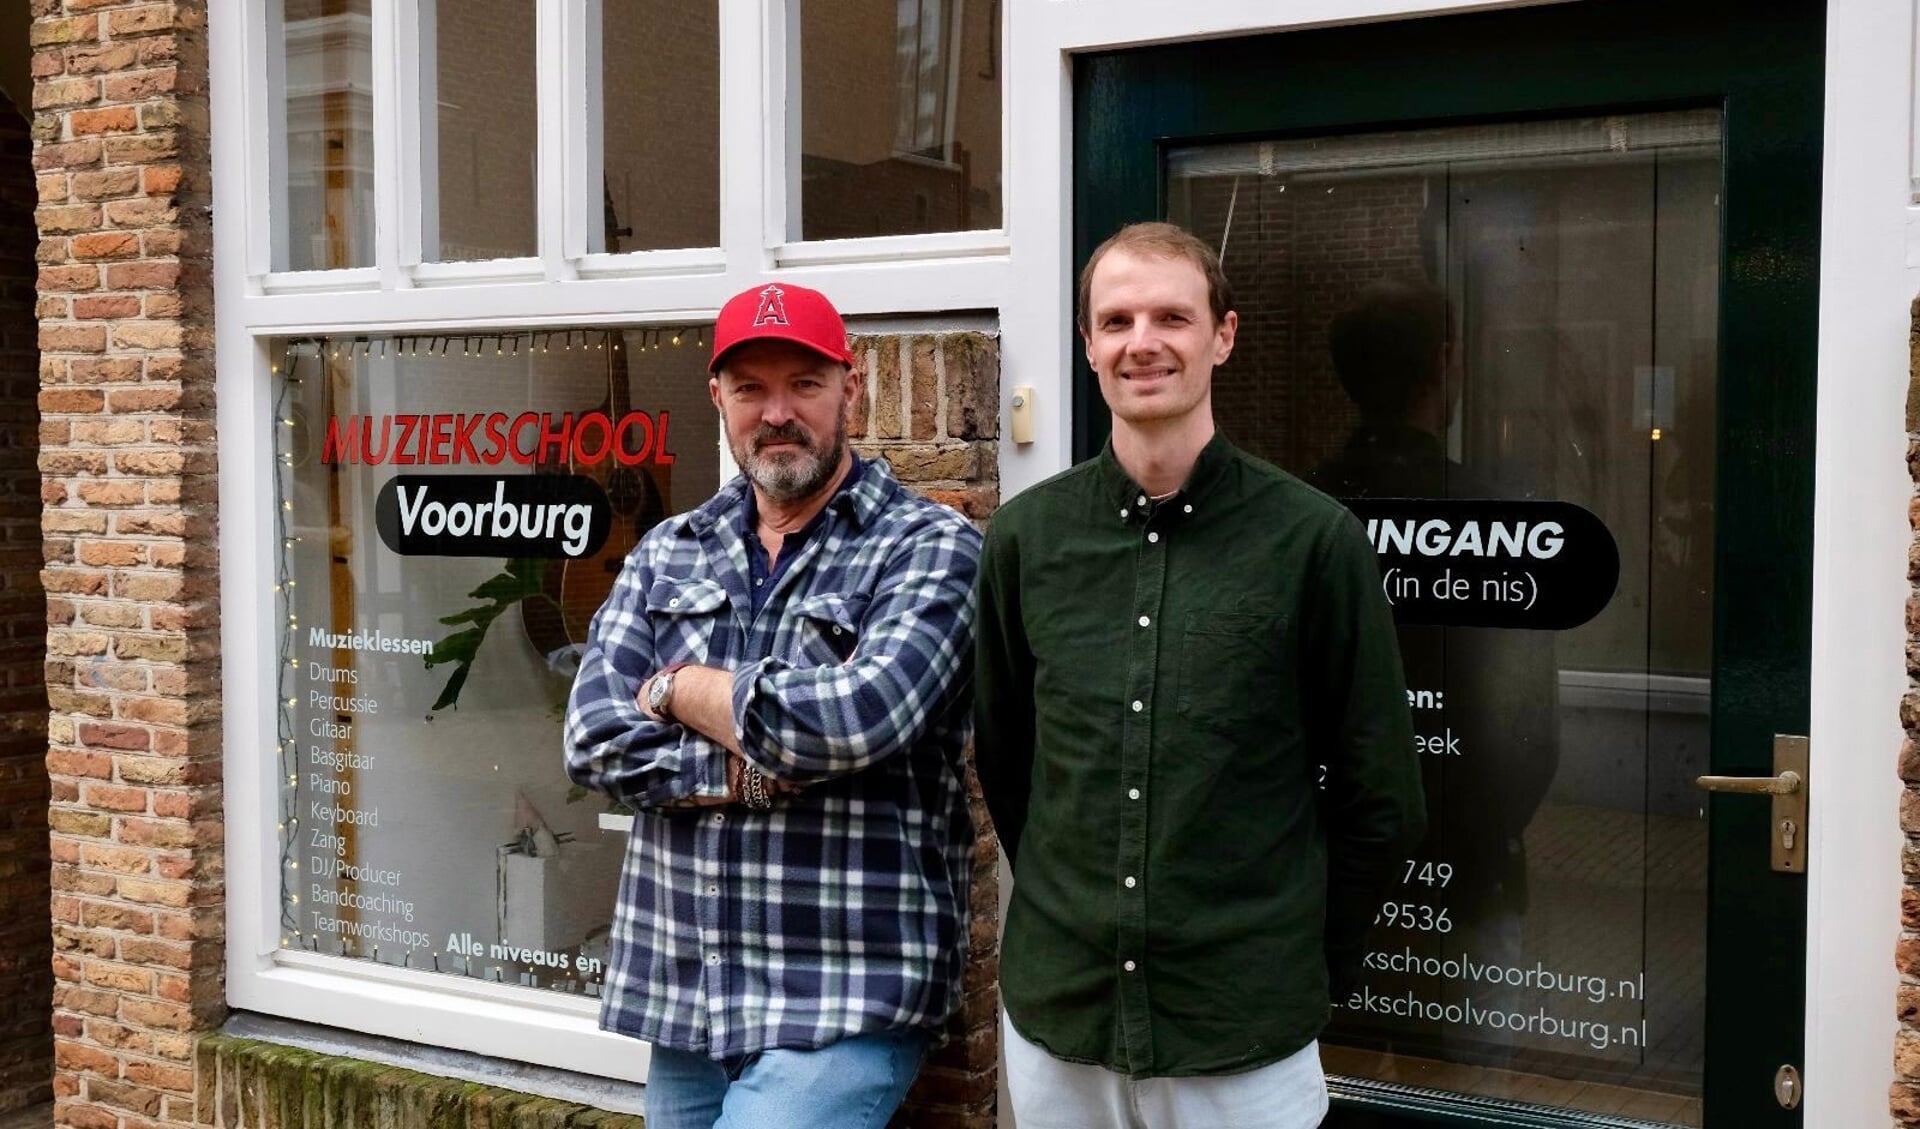 De nieuwe eigenaren van de Muziekschool Voorburg, Frank en Wouter (foto Marius de Moel).